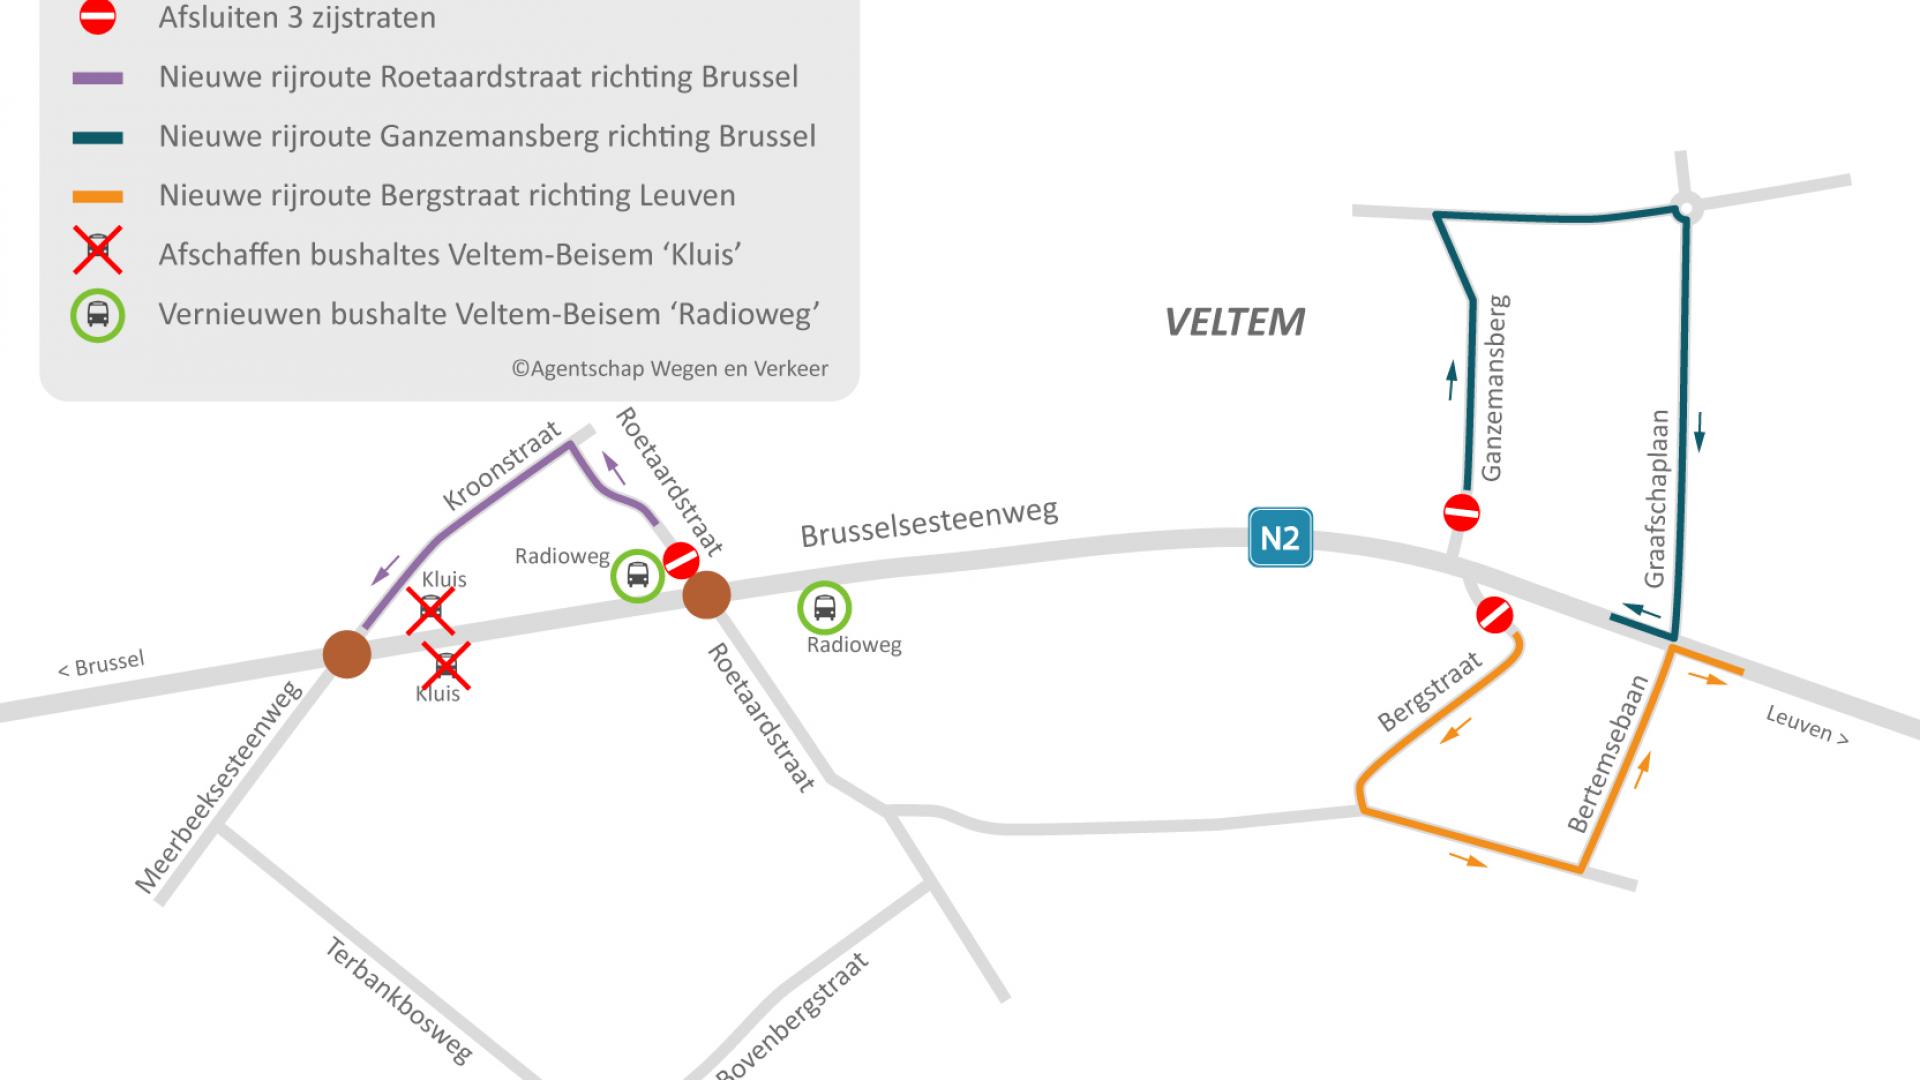 Situeringskaart van de werken op de Brusselsesteenweg in Herent met de afsluiting van 3 zijstraten